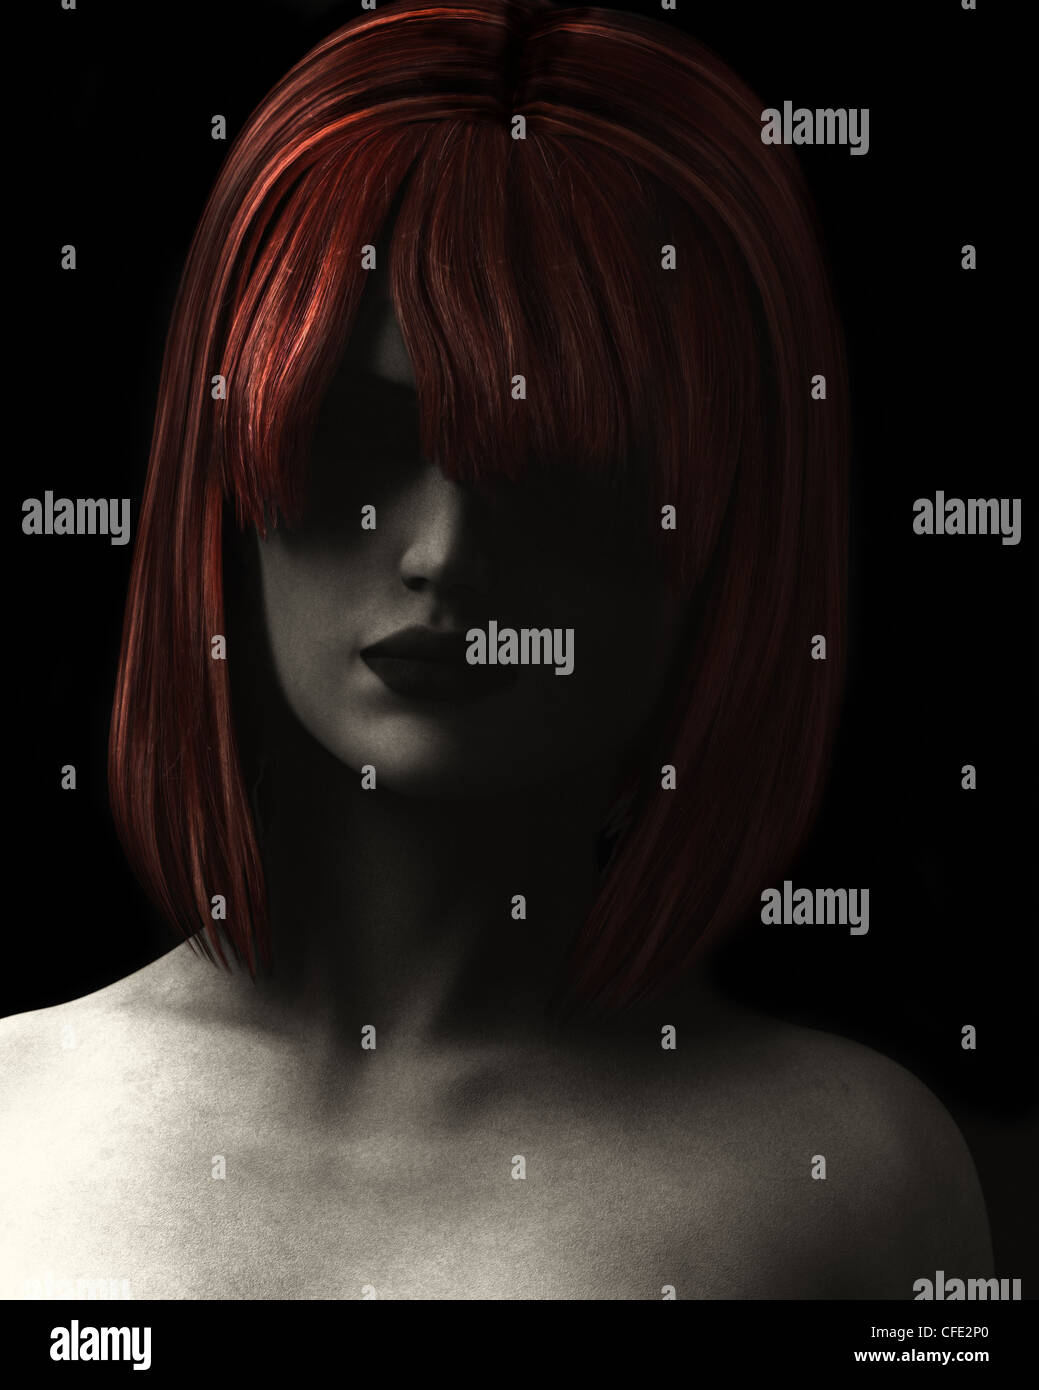 Bildende Kunst Stil digitale Illustration texturierte und körnig, schönen Frau im tiefen Schatten mit roten Haaren. Stockfoto